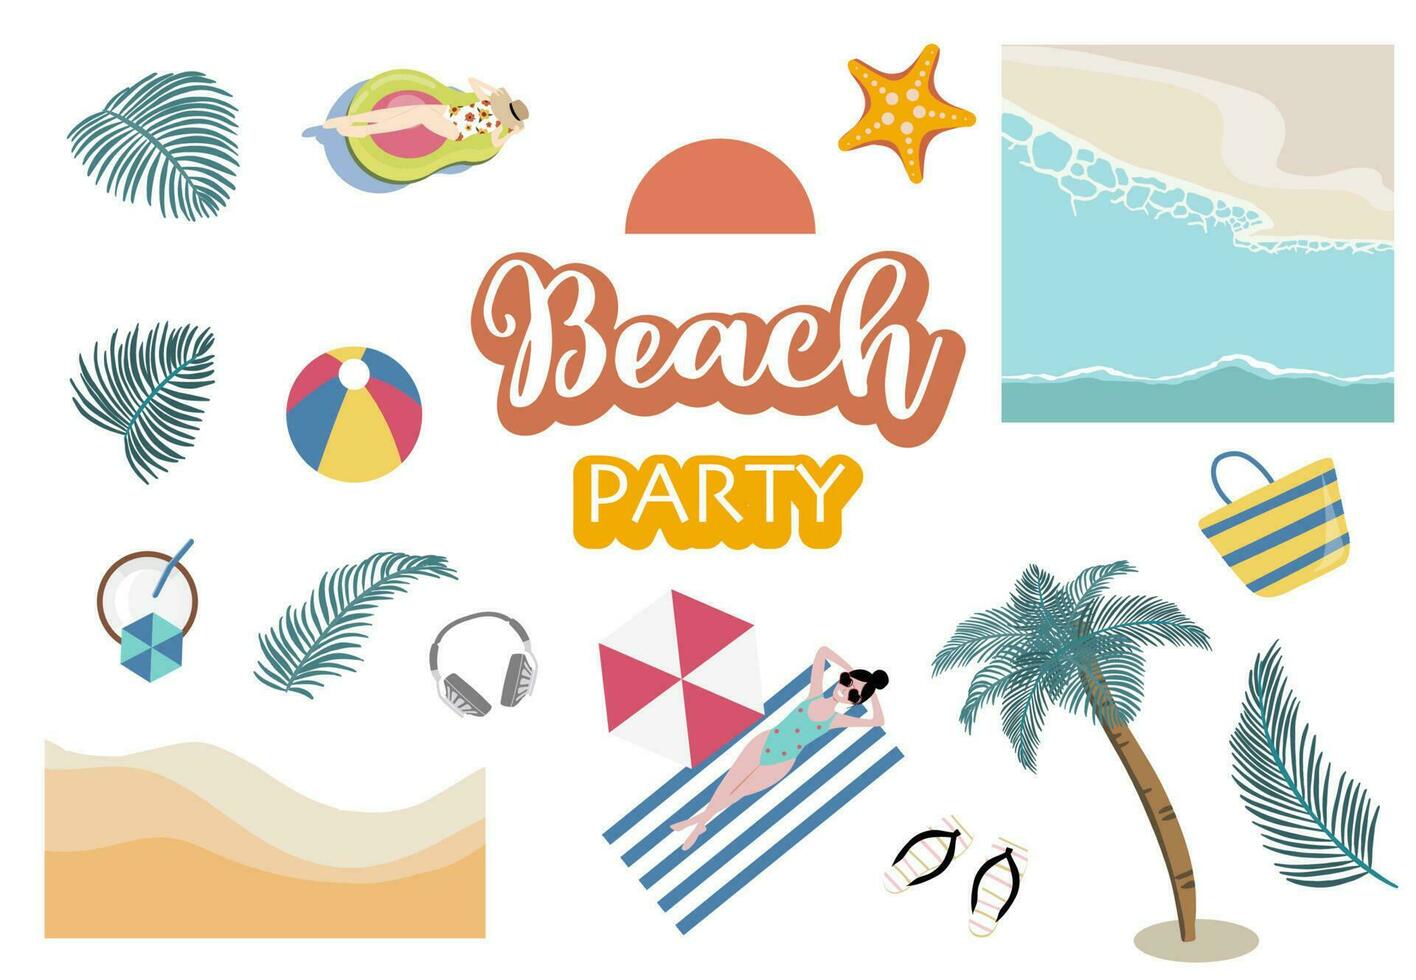 estate oggetto con spiaggia, mare, albero, sole, persone per cartolina vettore